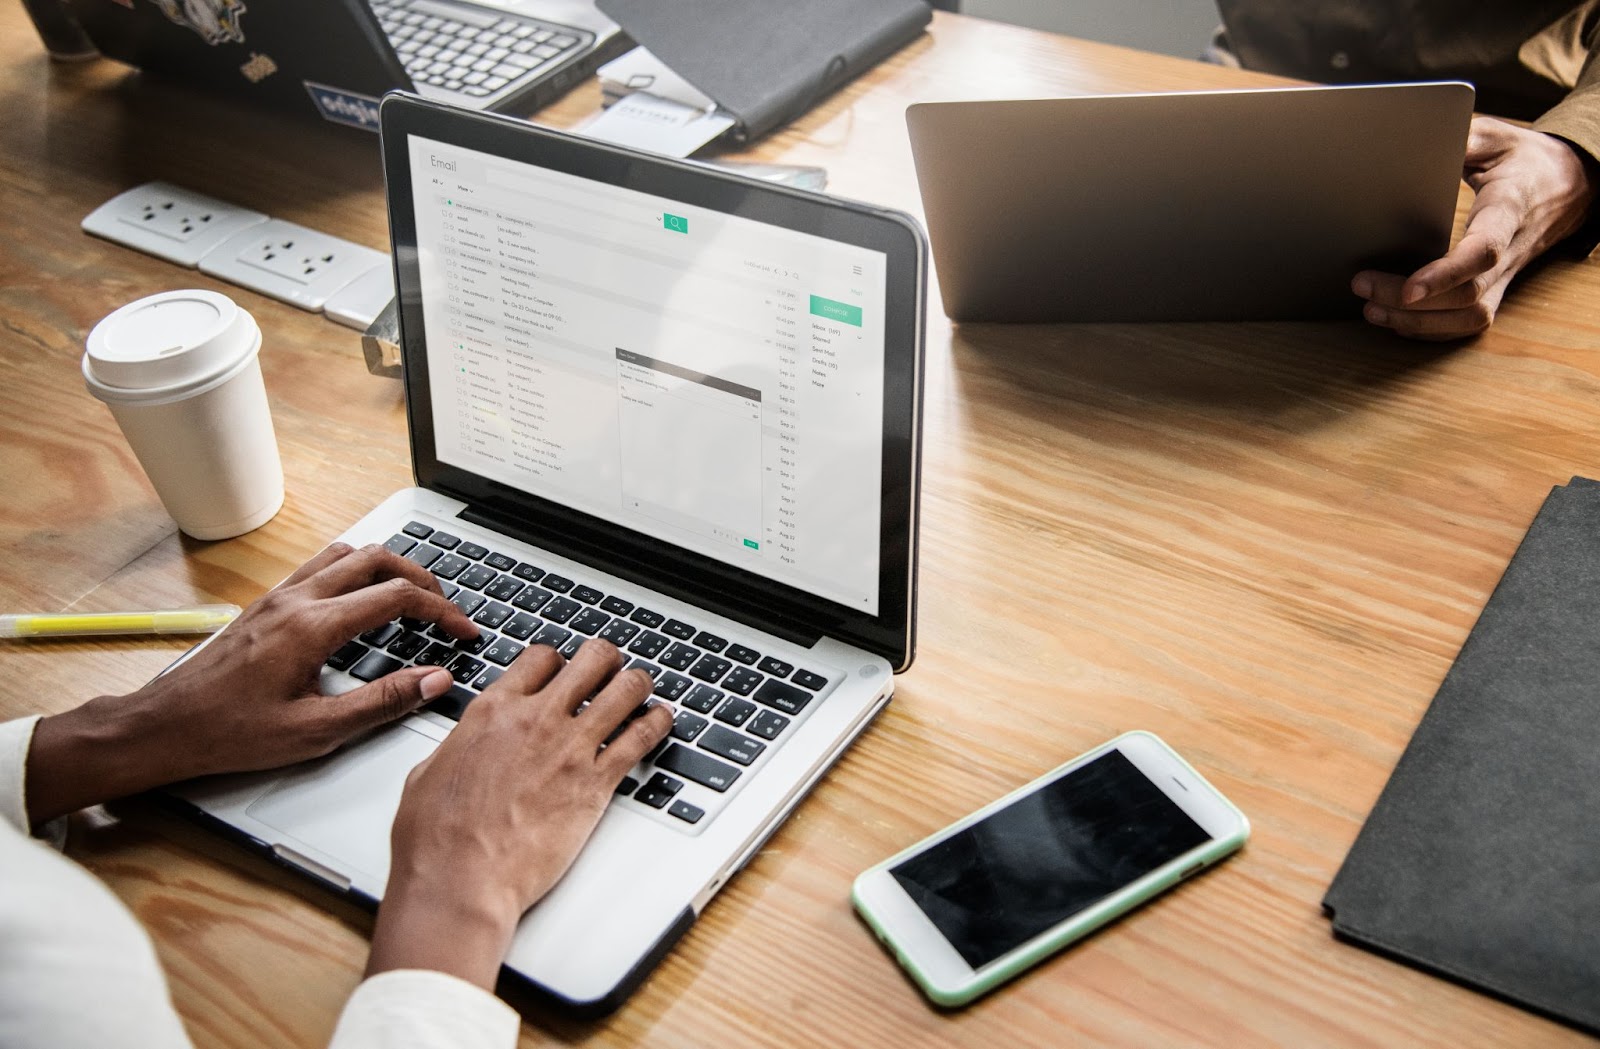 A imagem mostra as mãos de uma pessoa negra sob um laptop prata. A tela está aberta na caixa de e-mail e a pessoa parece estar digitando uma nova mensagem. 